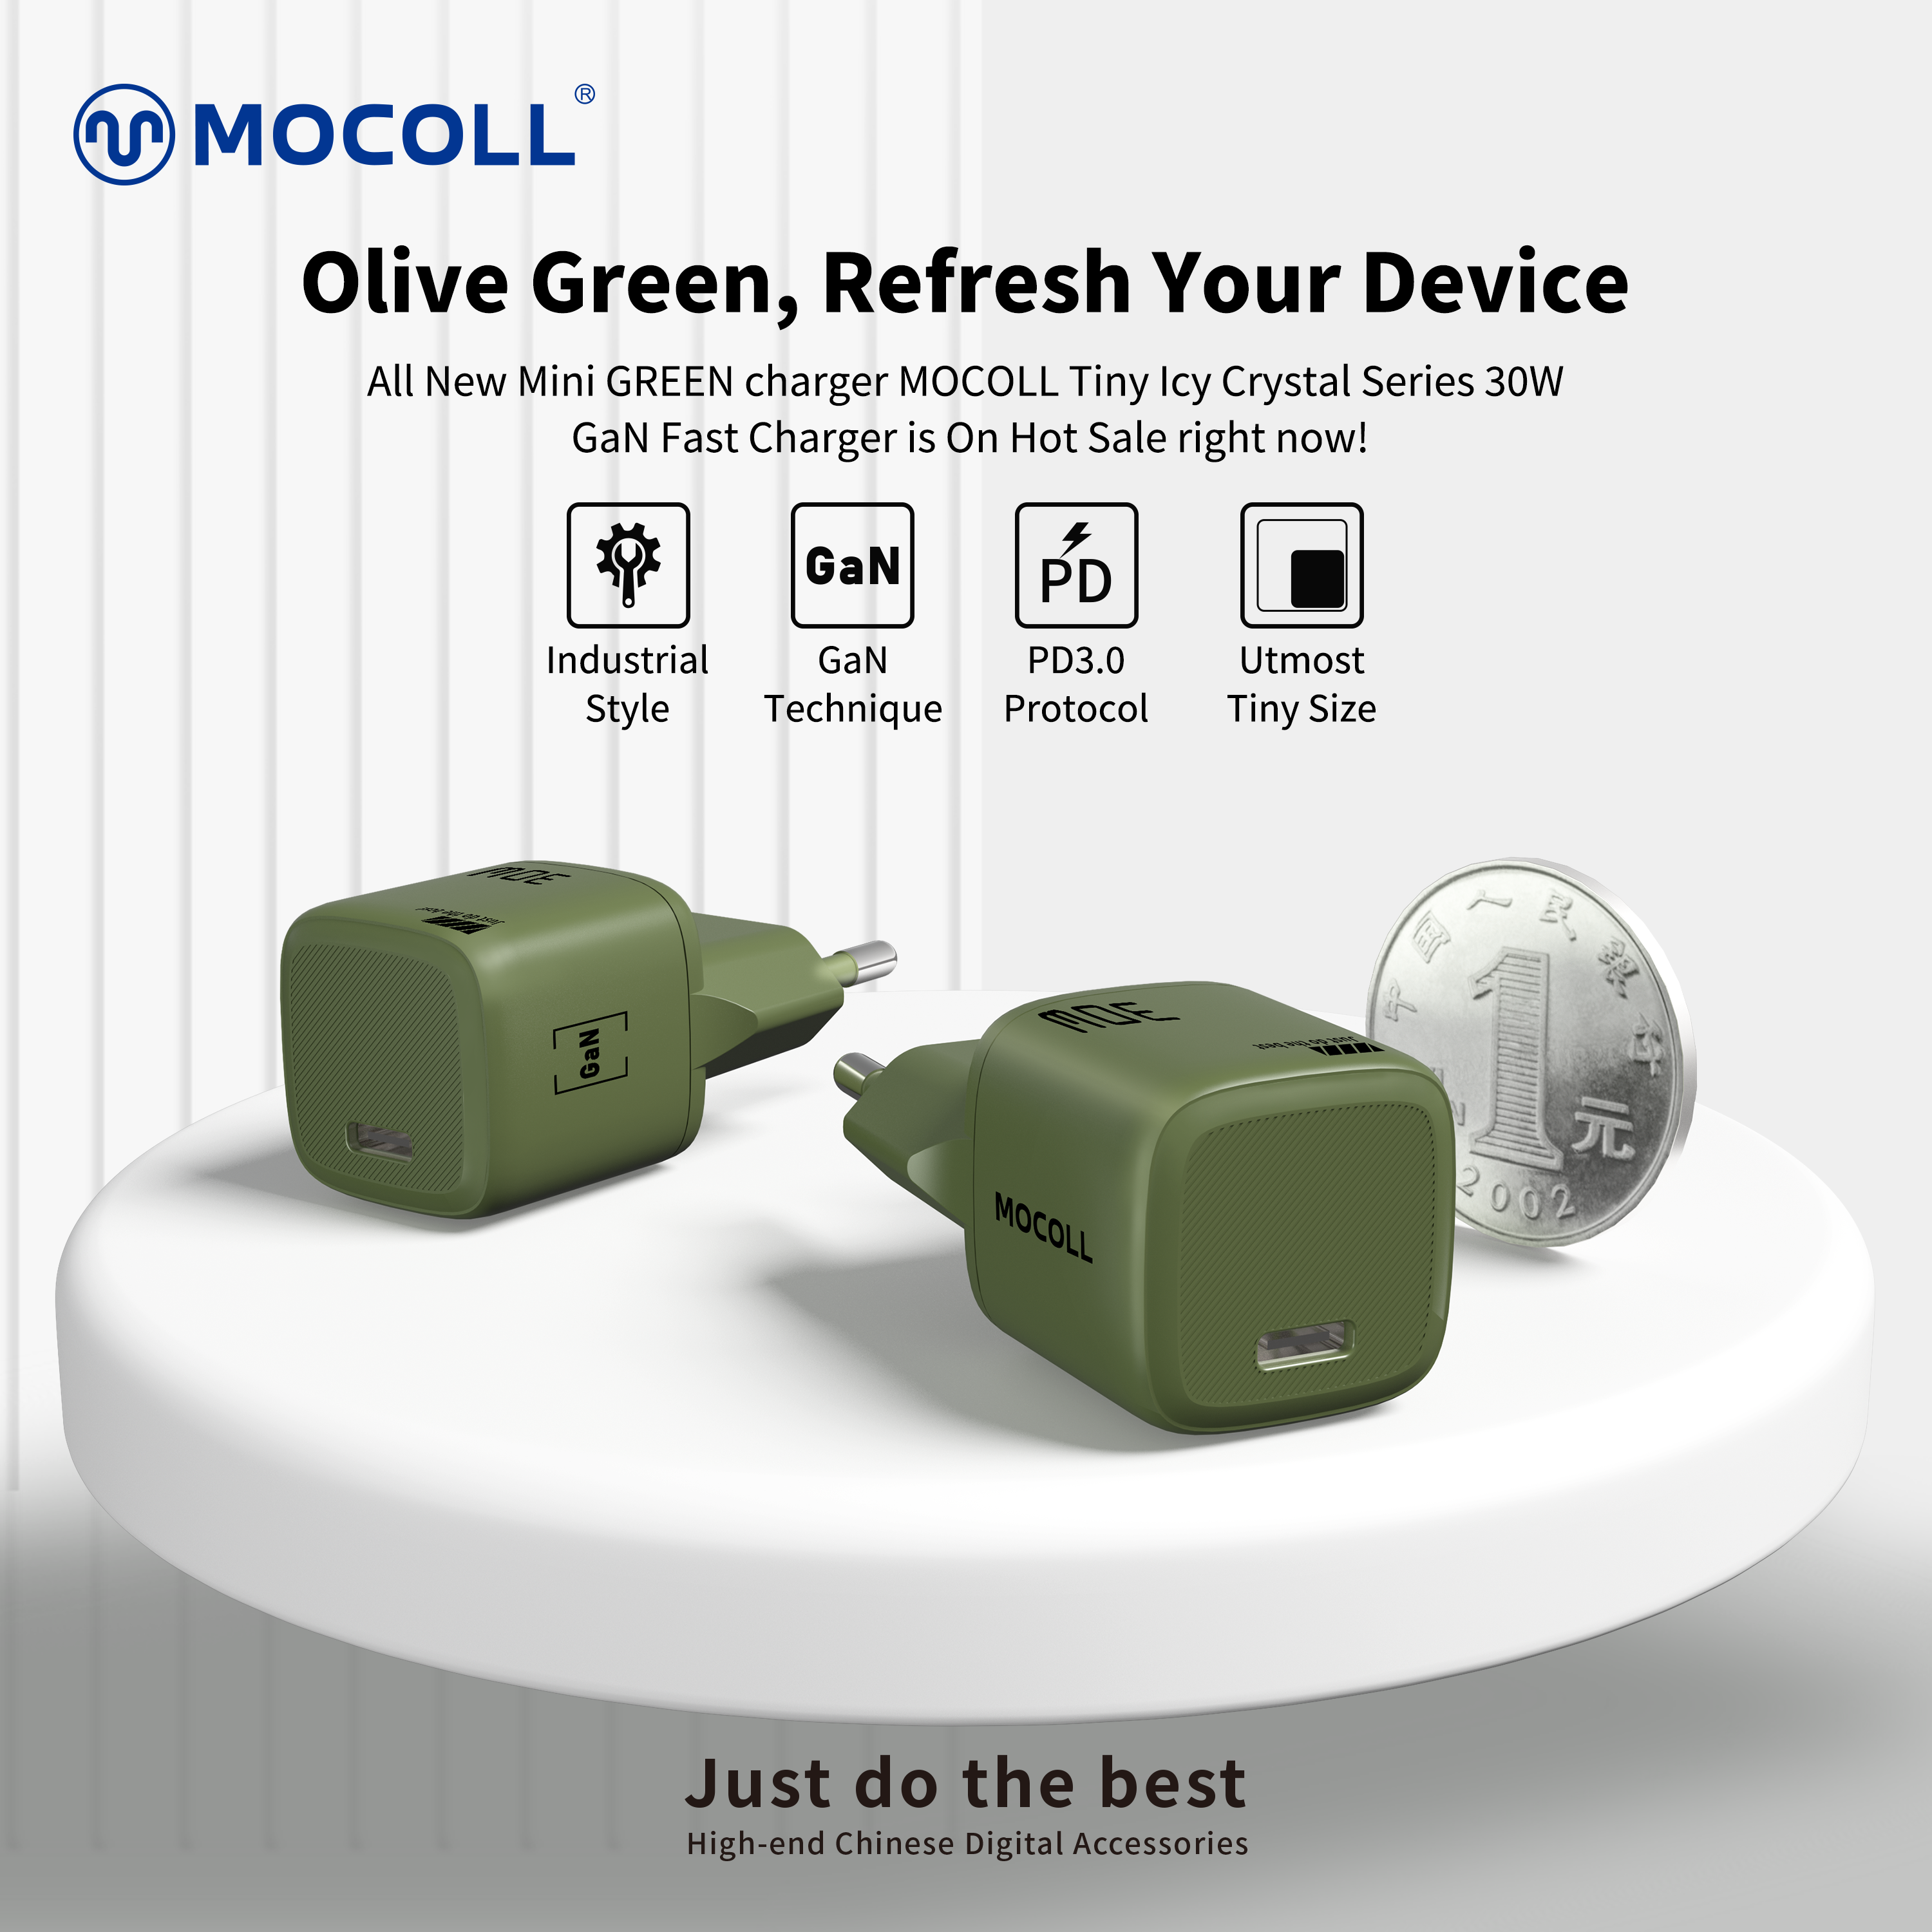 Au vert | Style industriel, MOCOLL Nouveau chargeur rapide GaN 30W vert olive